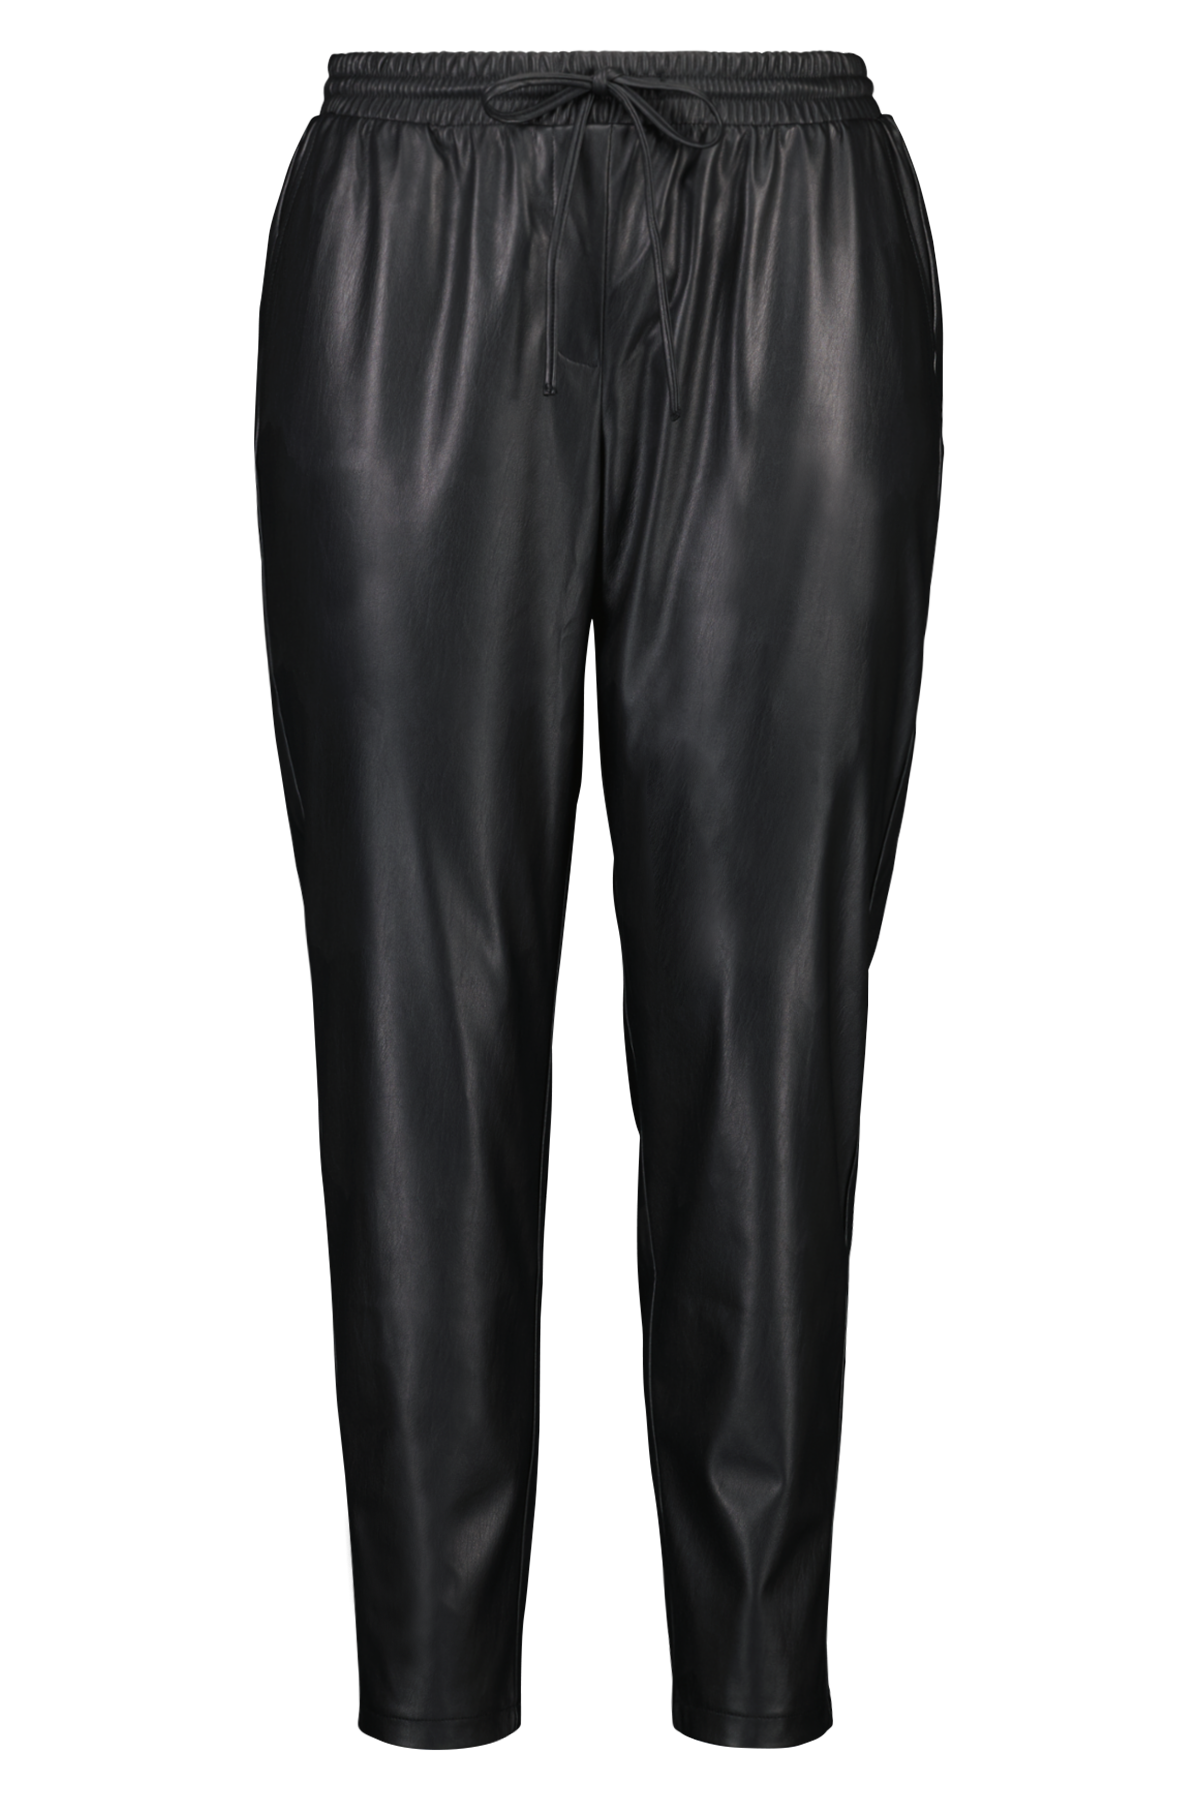 Pantalones de cuero sintético image 1